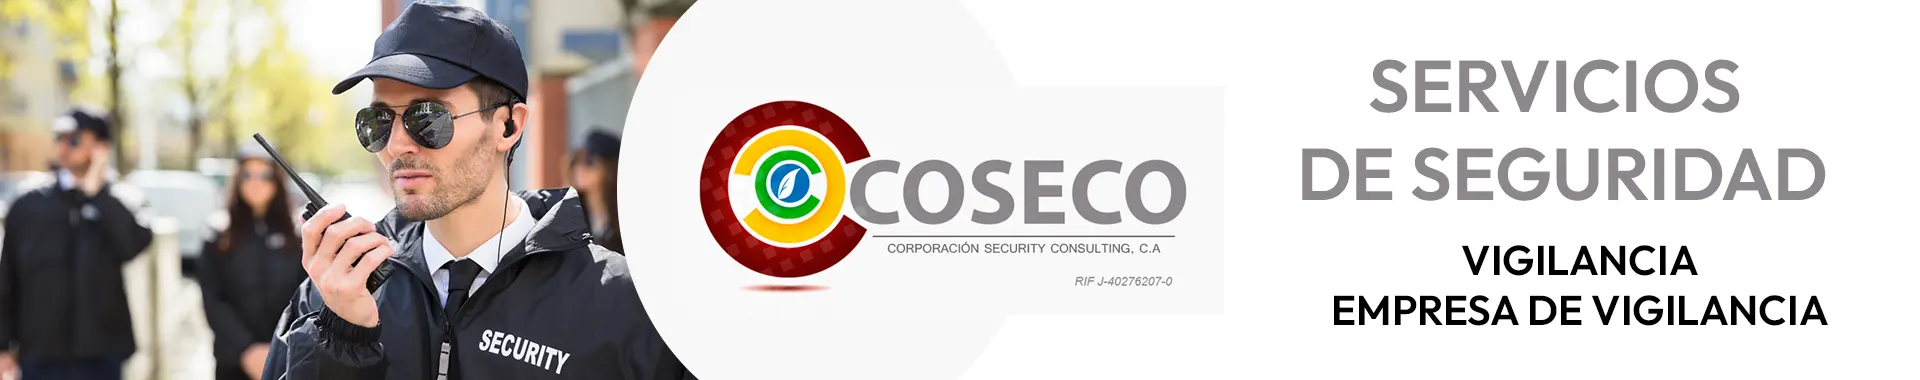 Imagen 2 del perfil de Coseco Corporación Security Consulting